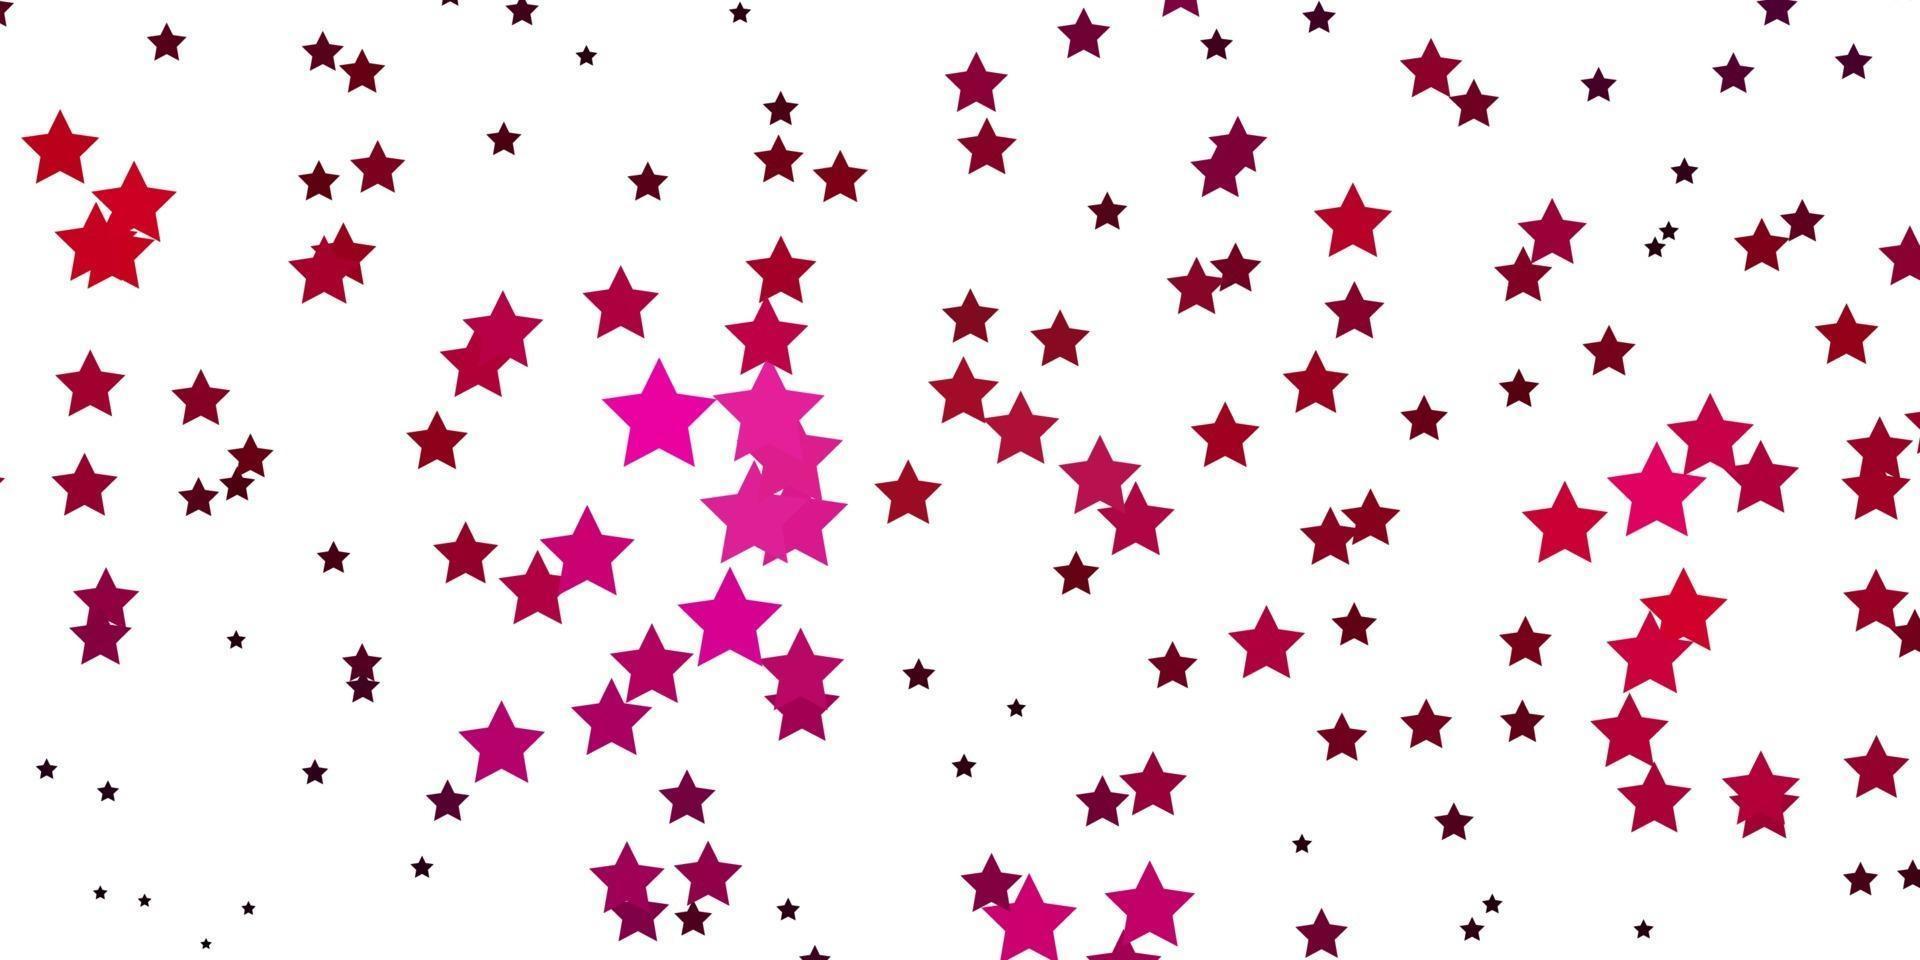 fond de vecteur rose clair avec des étoiles colorées.